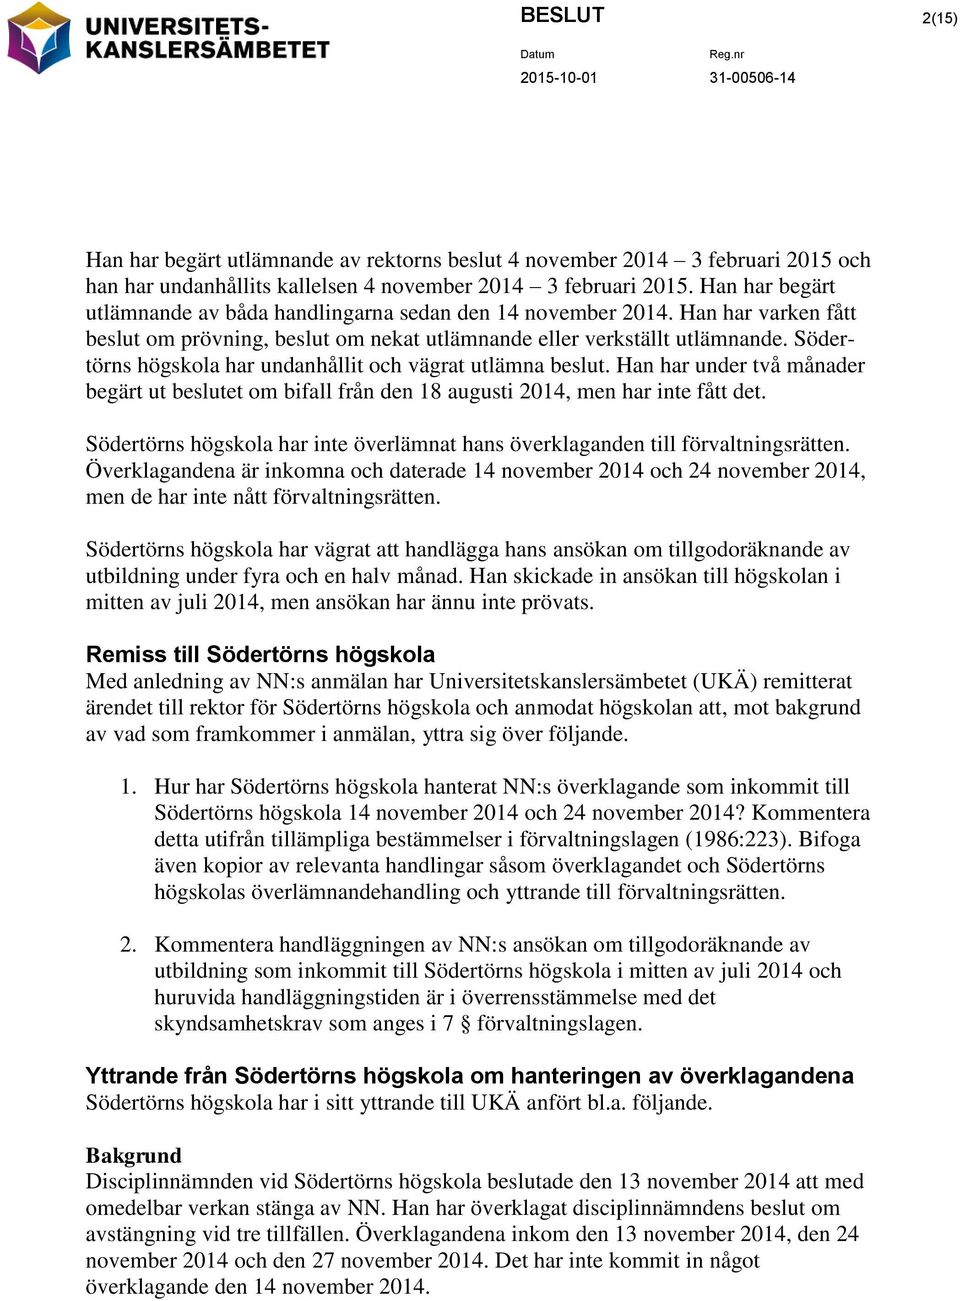 Södertörns högskola har undanhållit och vägrat utlämna beslut. Han har under två månader begärt ut beslutet om bifall från den 18 augusti 2014, men har inte fått det.